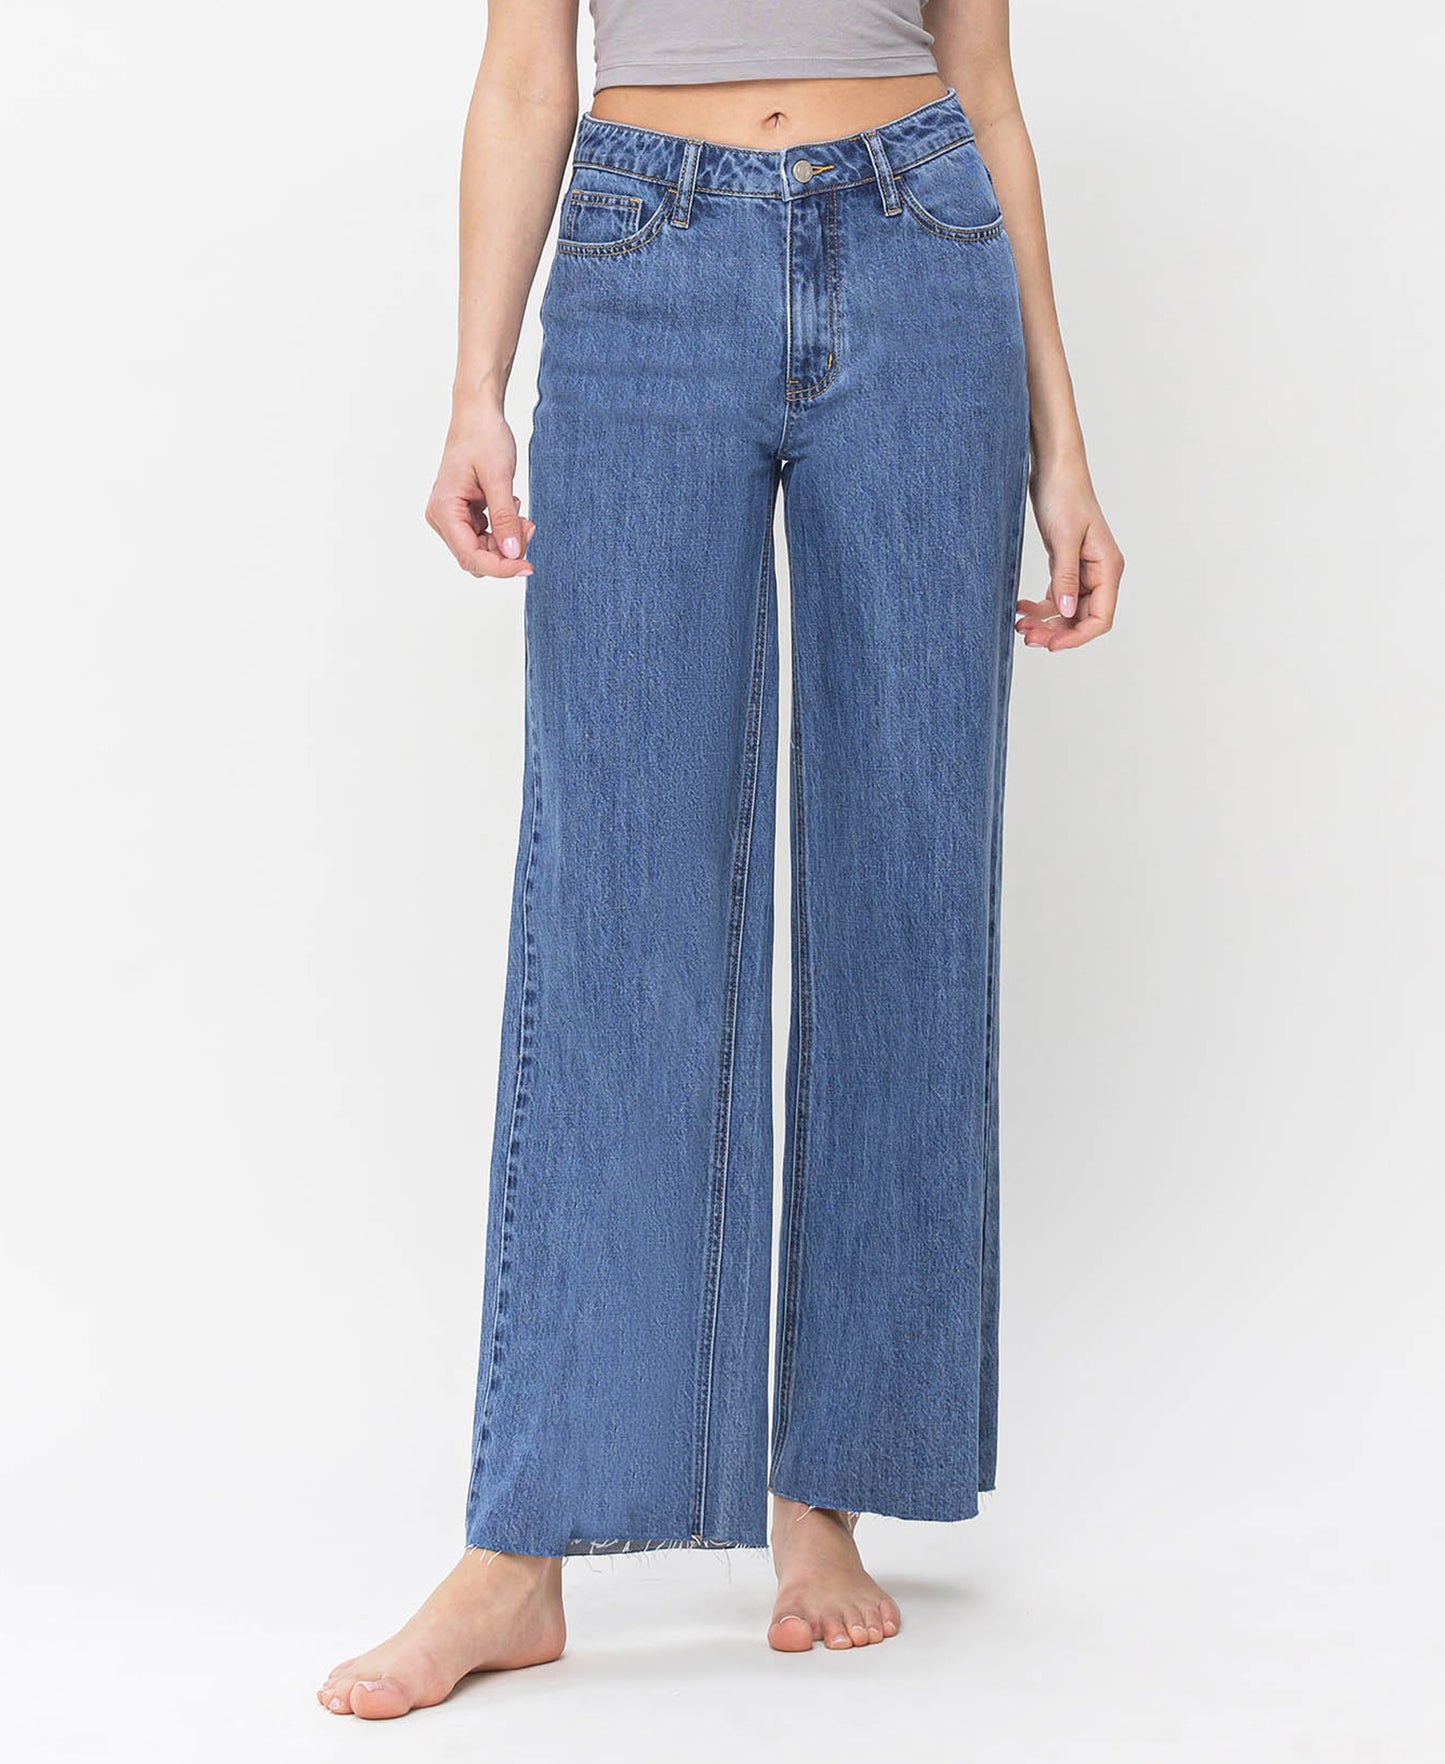 Kennedy Jeans